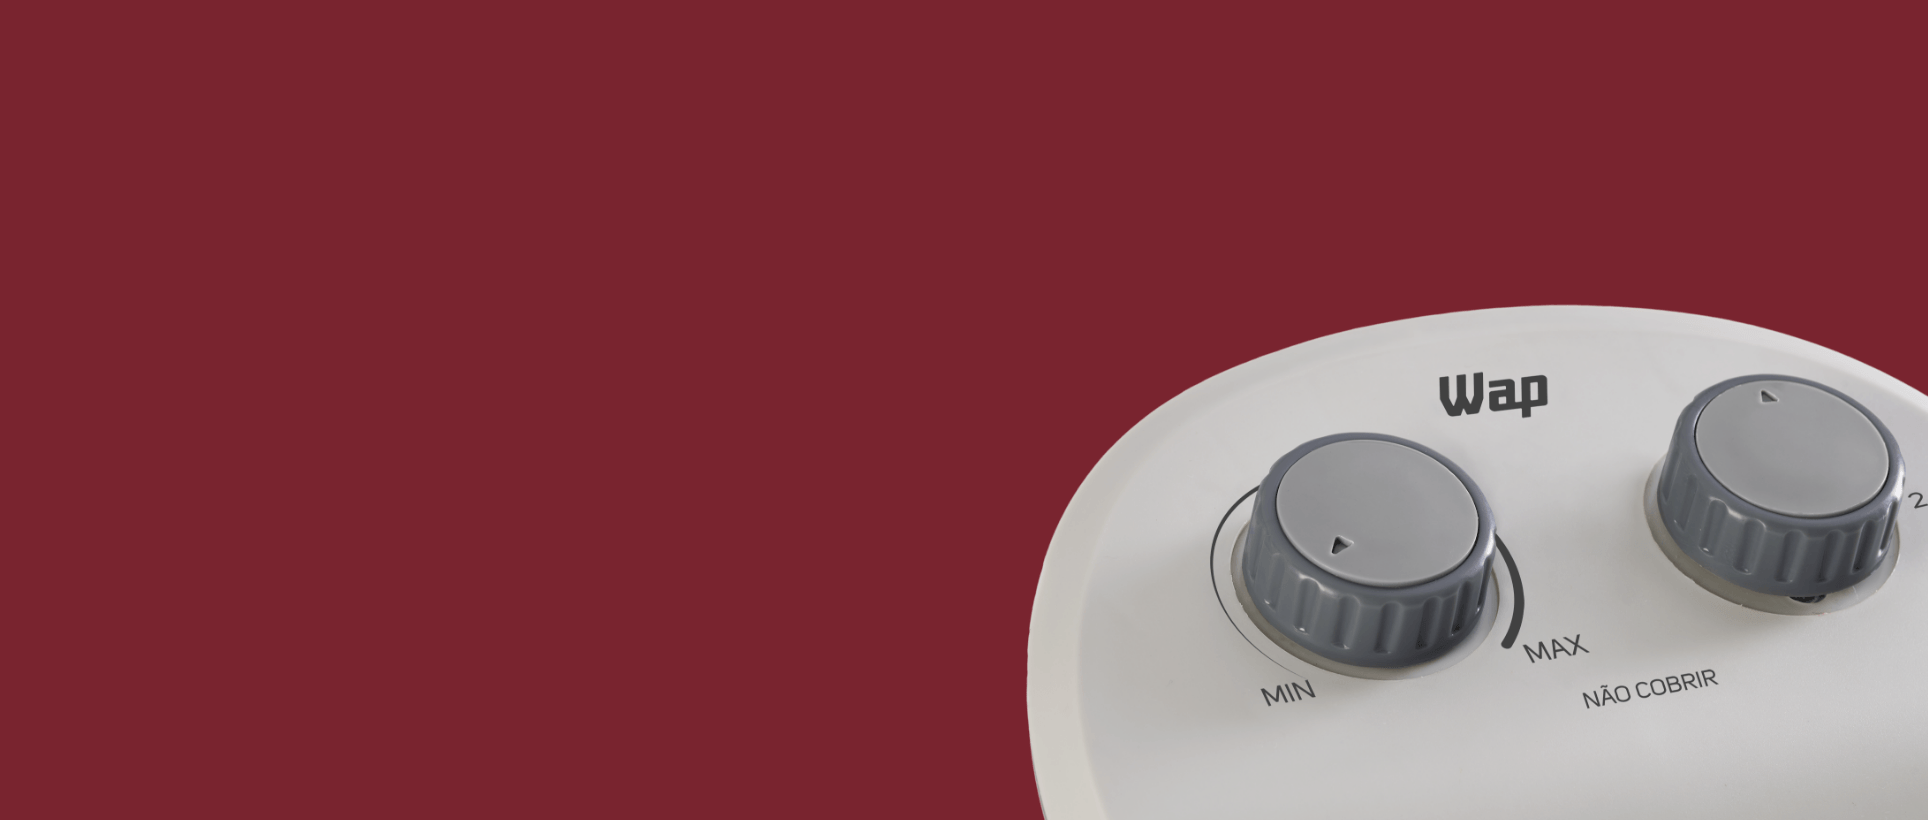 Aquecedor Air Heat visão frontal do equipamento, pois grades parte inferior, em cima da grade possui uma luz indicadora de funcionamento e na parte superior dois botões giratórios um para controle de temperatura